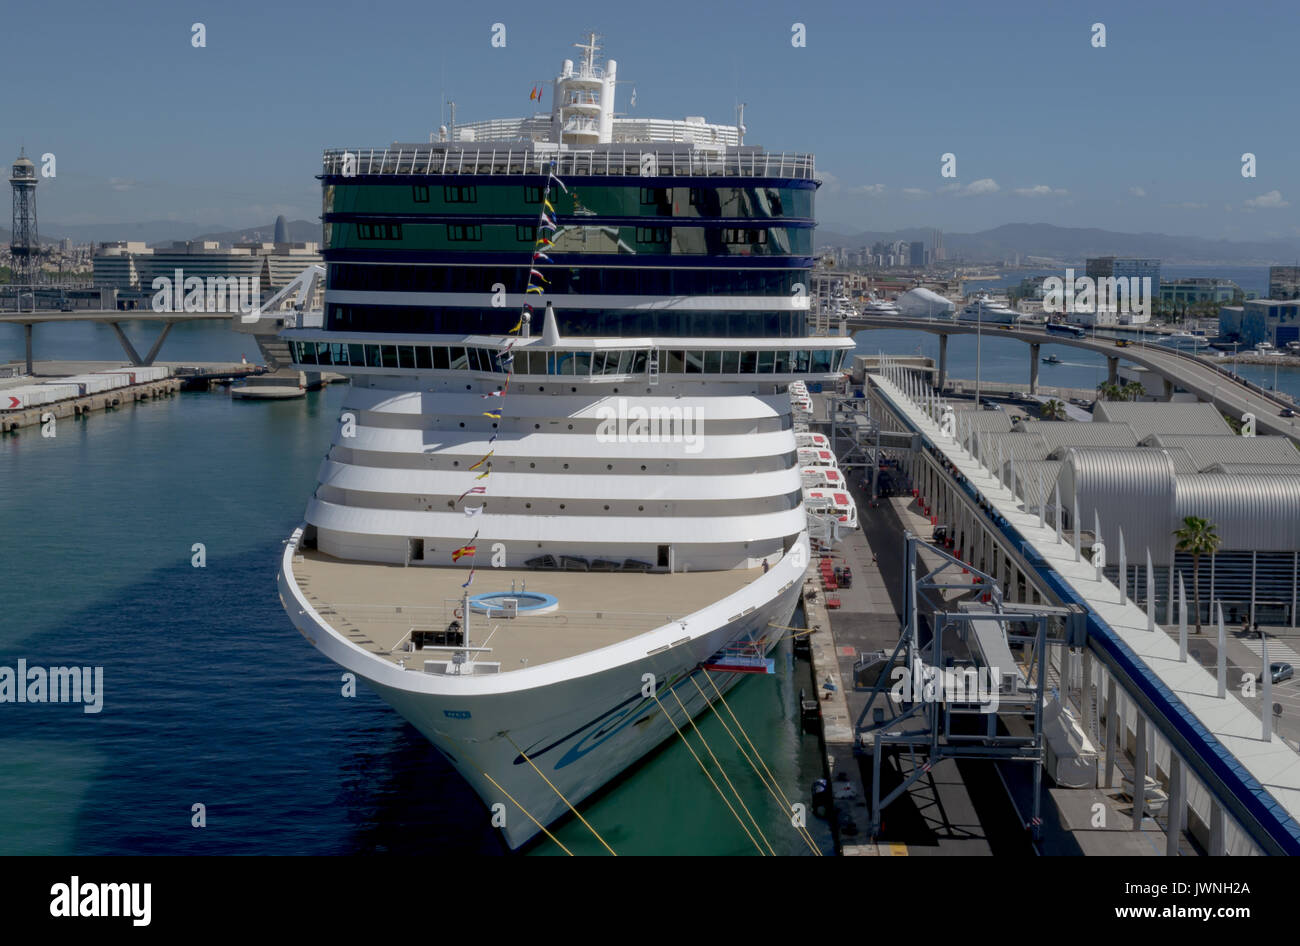 Avant de Norwegian Epic, Norwegian Cruise Line - Barcelone, Espagne Port de croisière - 07 mai, 2017 : bateau de croisière est prêt à partir pour un voyage en Méditerranée. Banque D'Images